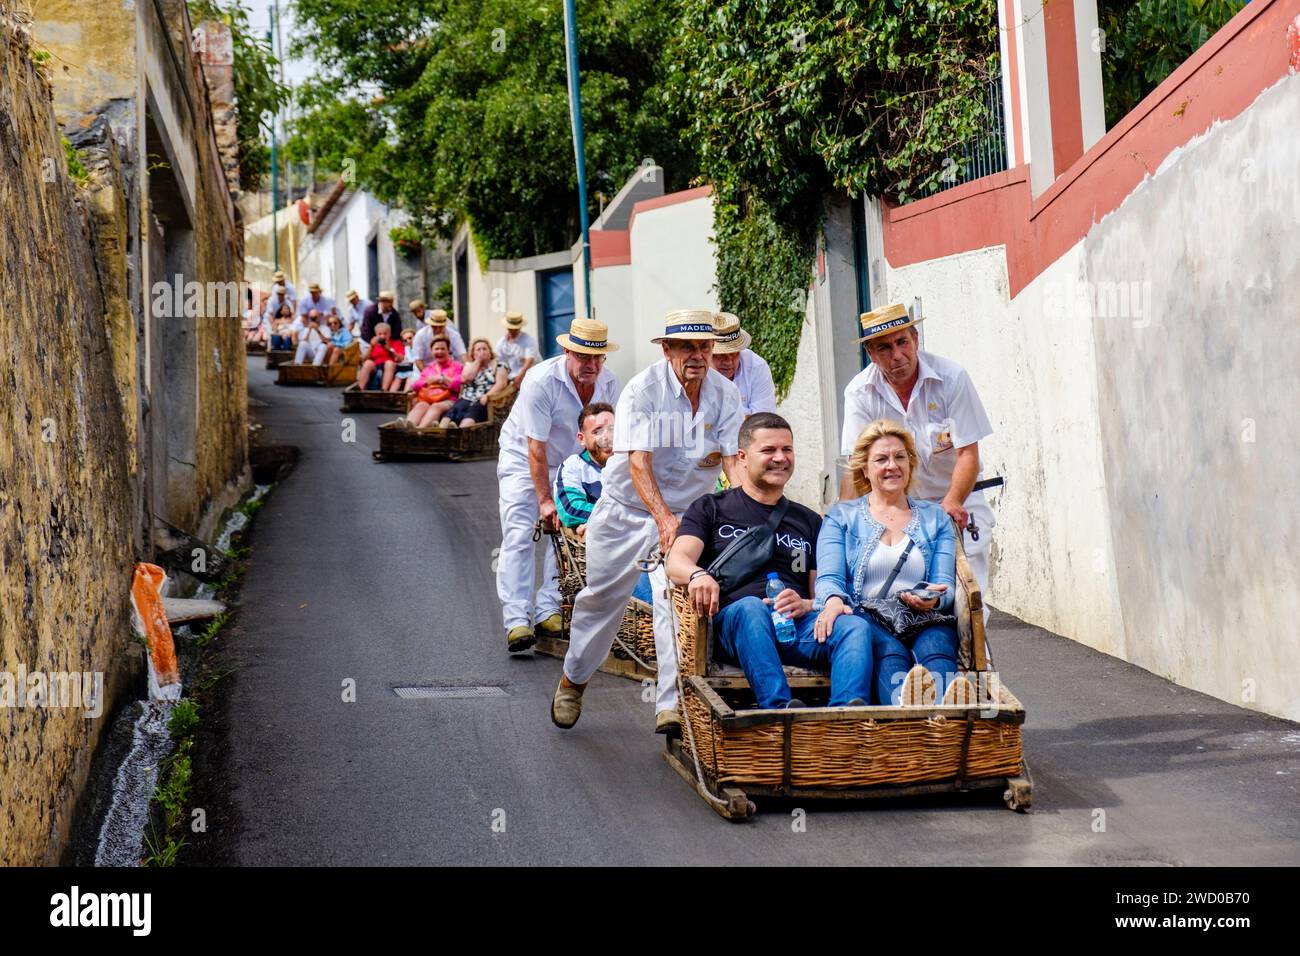 Touristes poussés en descente par carreiros, carros de cesto, paniers, Monte toboggan tour, paniers en osier montés sur patins, Funchal, Madère Banque D'Images